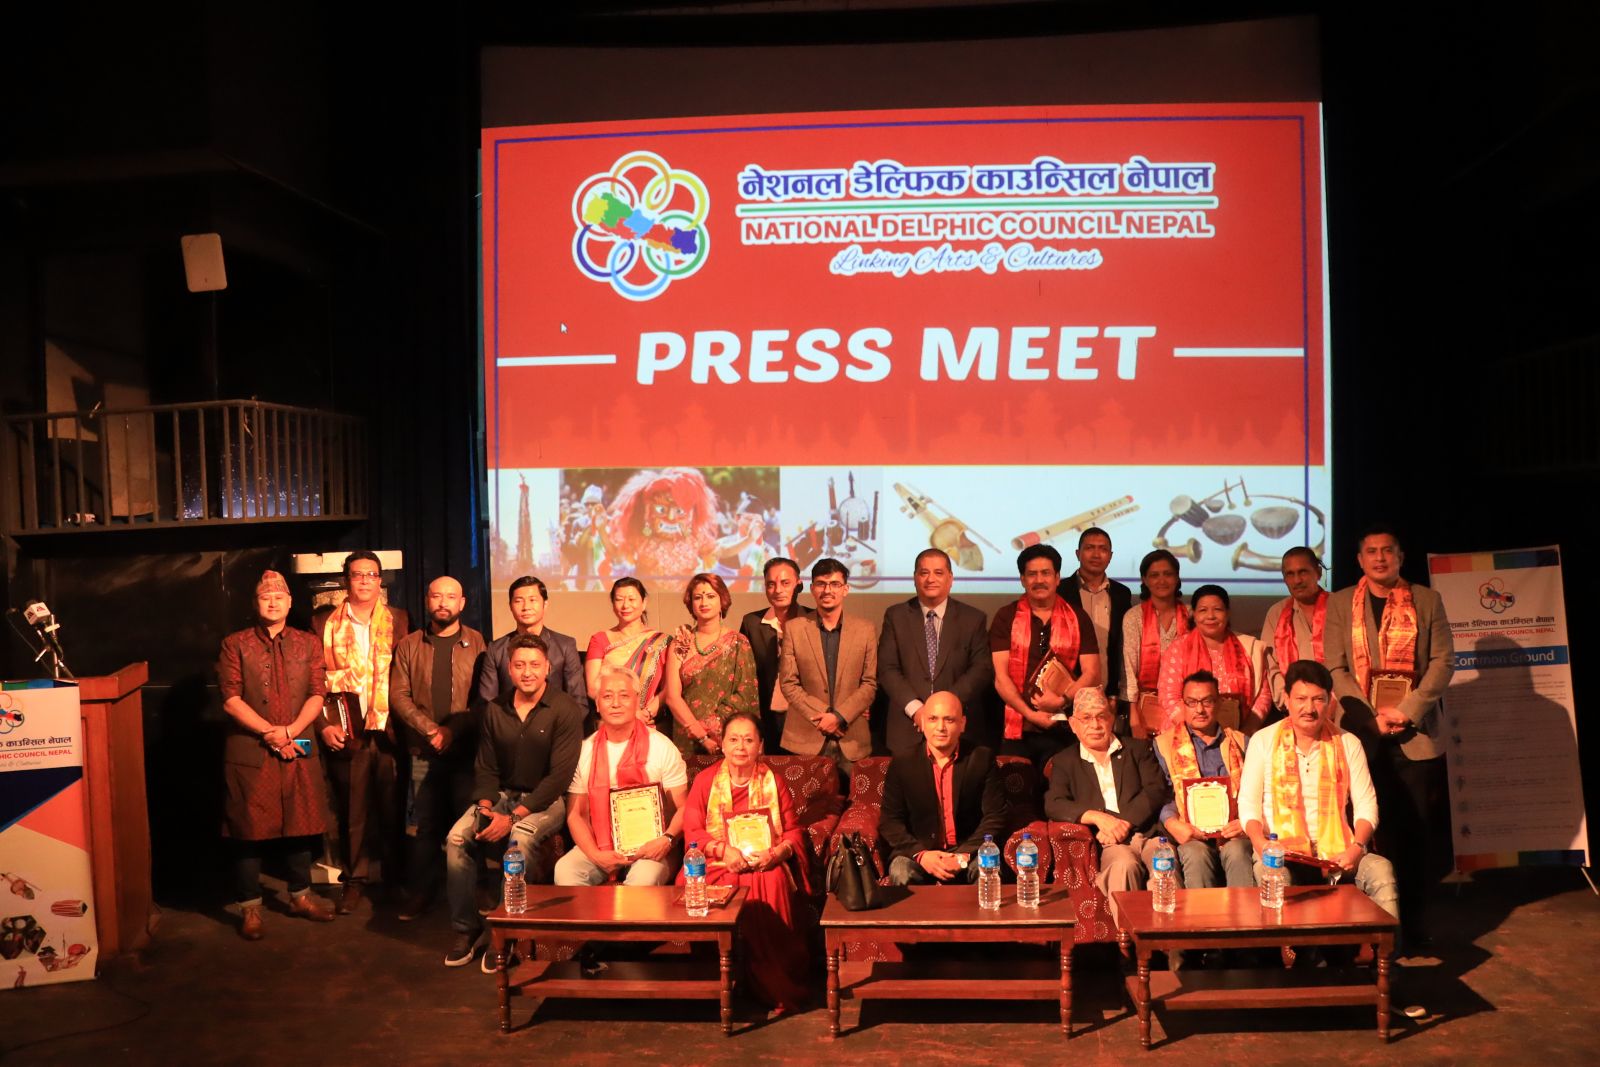 श्रीदेवको नेतृत्वमा नेशनल डेल्फिक काउन्सिल नेपाल गठन